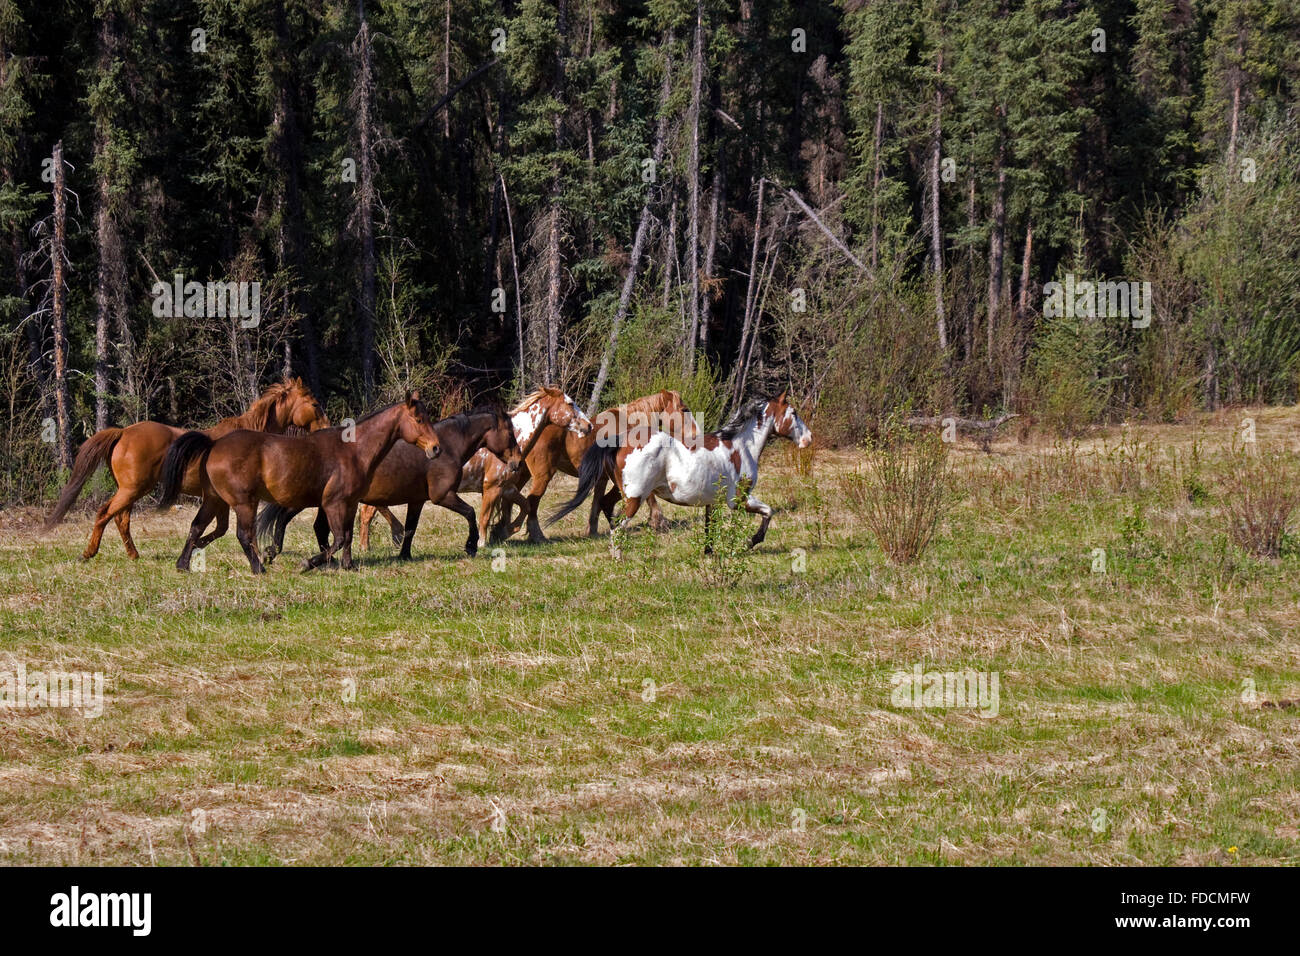 Wildpferde in das Yukon-Territorium Kanadas ausgeführt.  Aufgenommen im Mai diese Pferde wurden in voll galoppieren, als fotografiert. Stockfoto